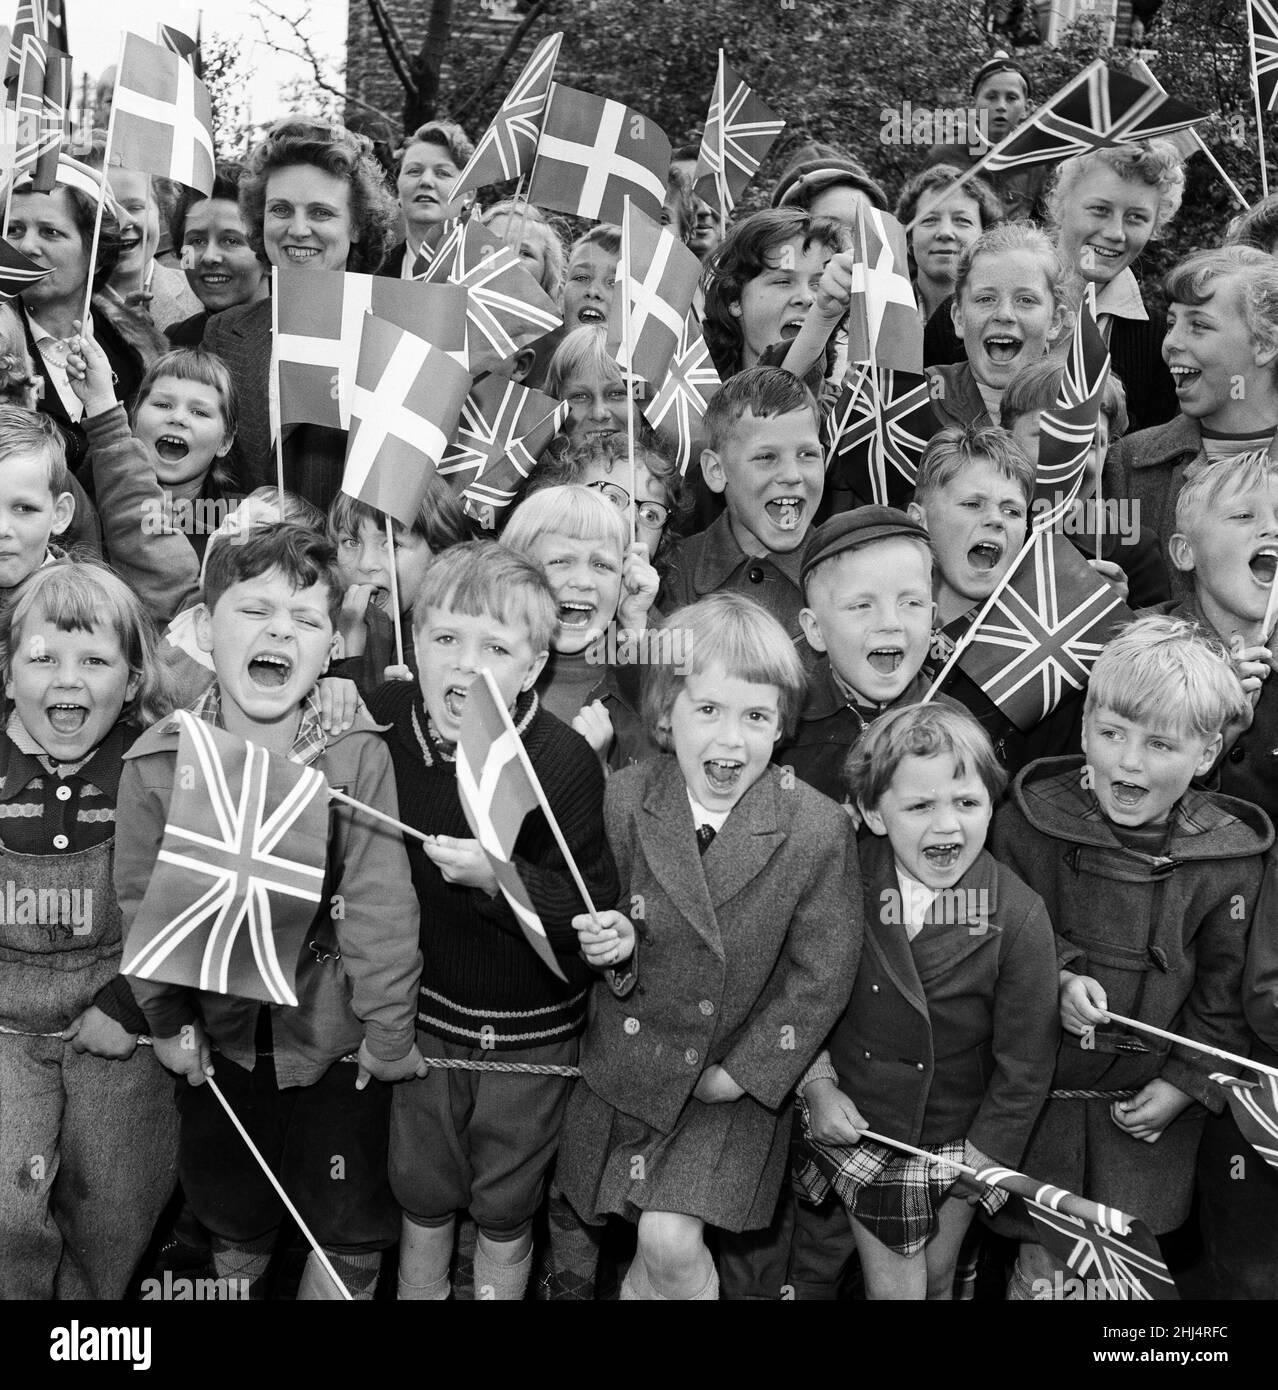 La Reina Isabel II y el Príncipe Felipe, Duque de Edimburgo, visitan Dinamarca. Los niños con banderas de Union Jack y banderas danesas animan cuando la reina Isabel II y el príncipe Felipe visitan el centro de recreación. 22nd de mayo de 1957. Foto de stock